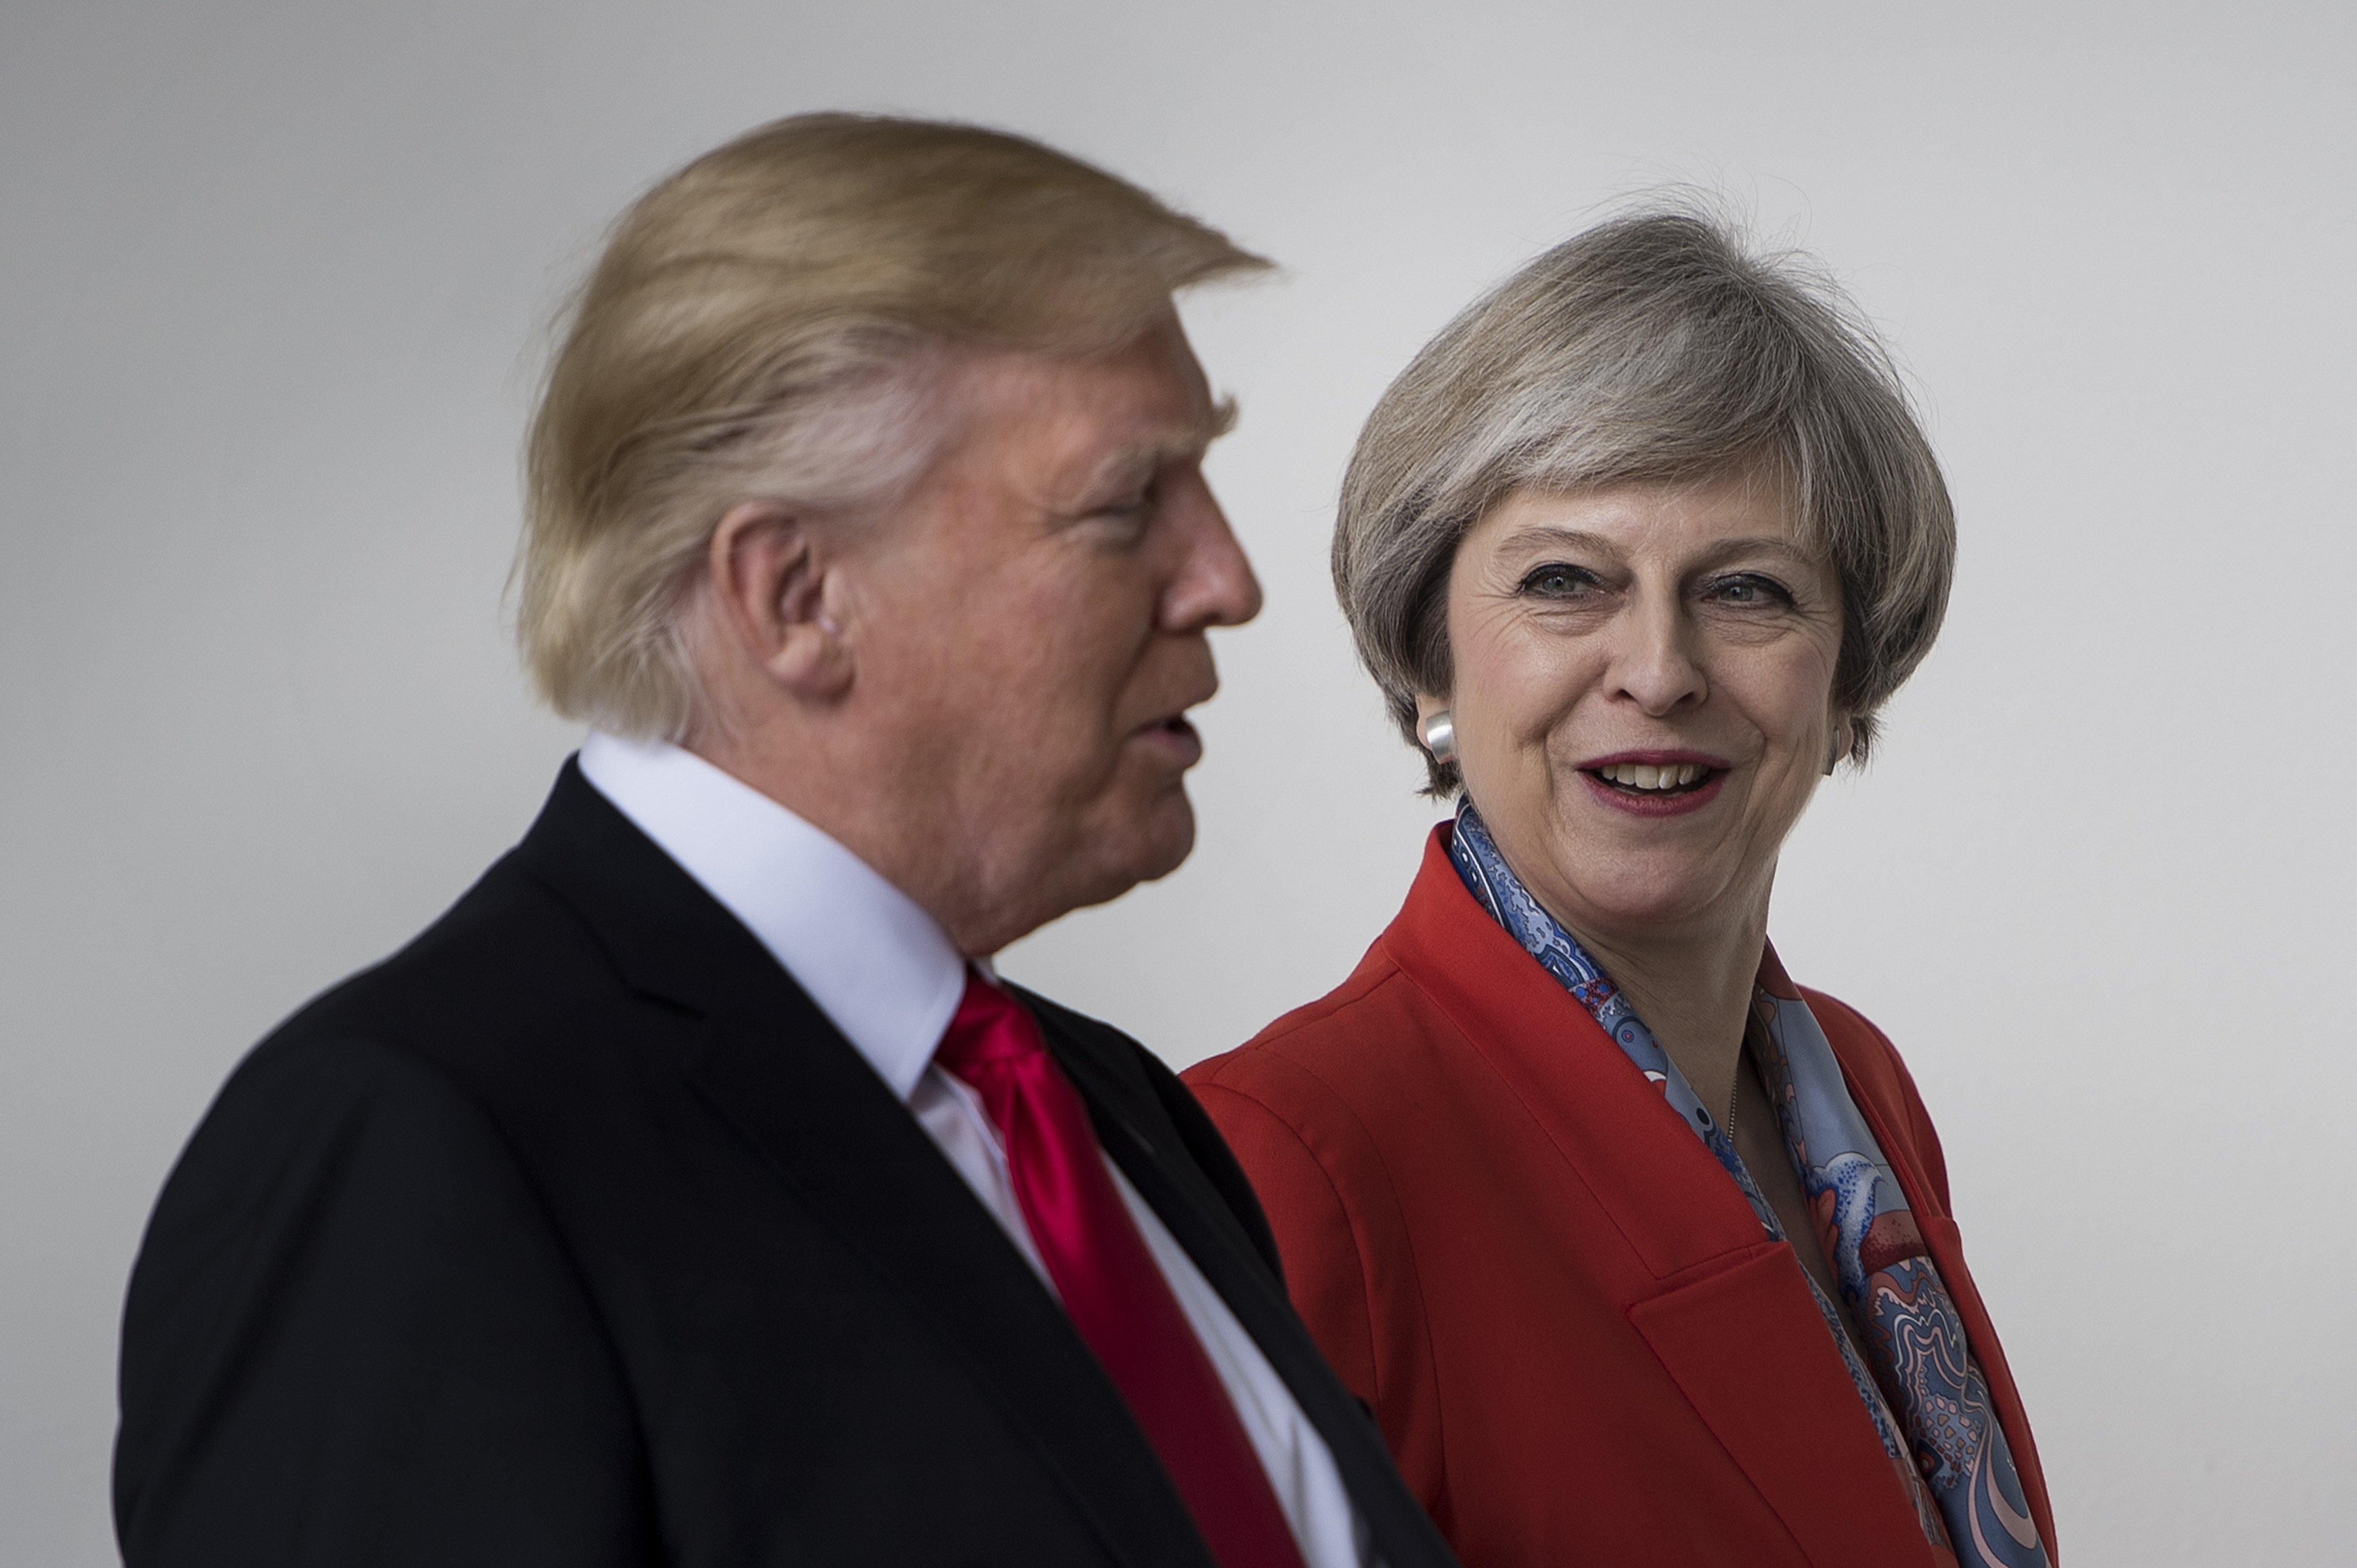 Donald Trump y Theresa May hablan en la Casa Blanca durante su reunión de este viernes. (Crédito: BRENDAN SMIALOWSKI/AFP/Getty Images)